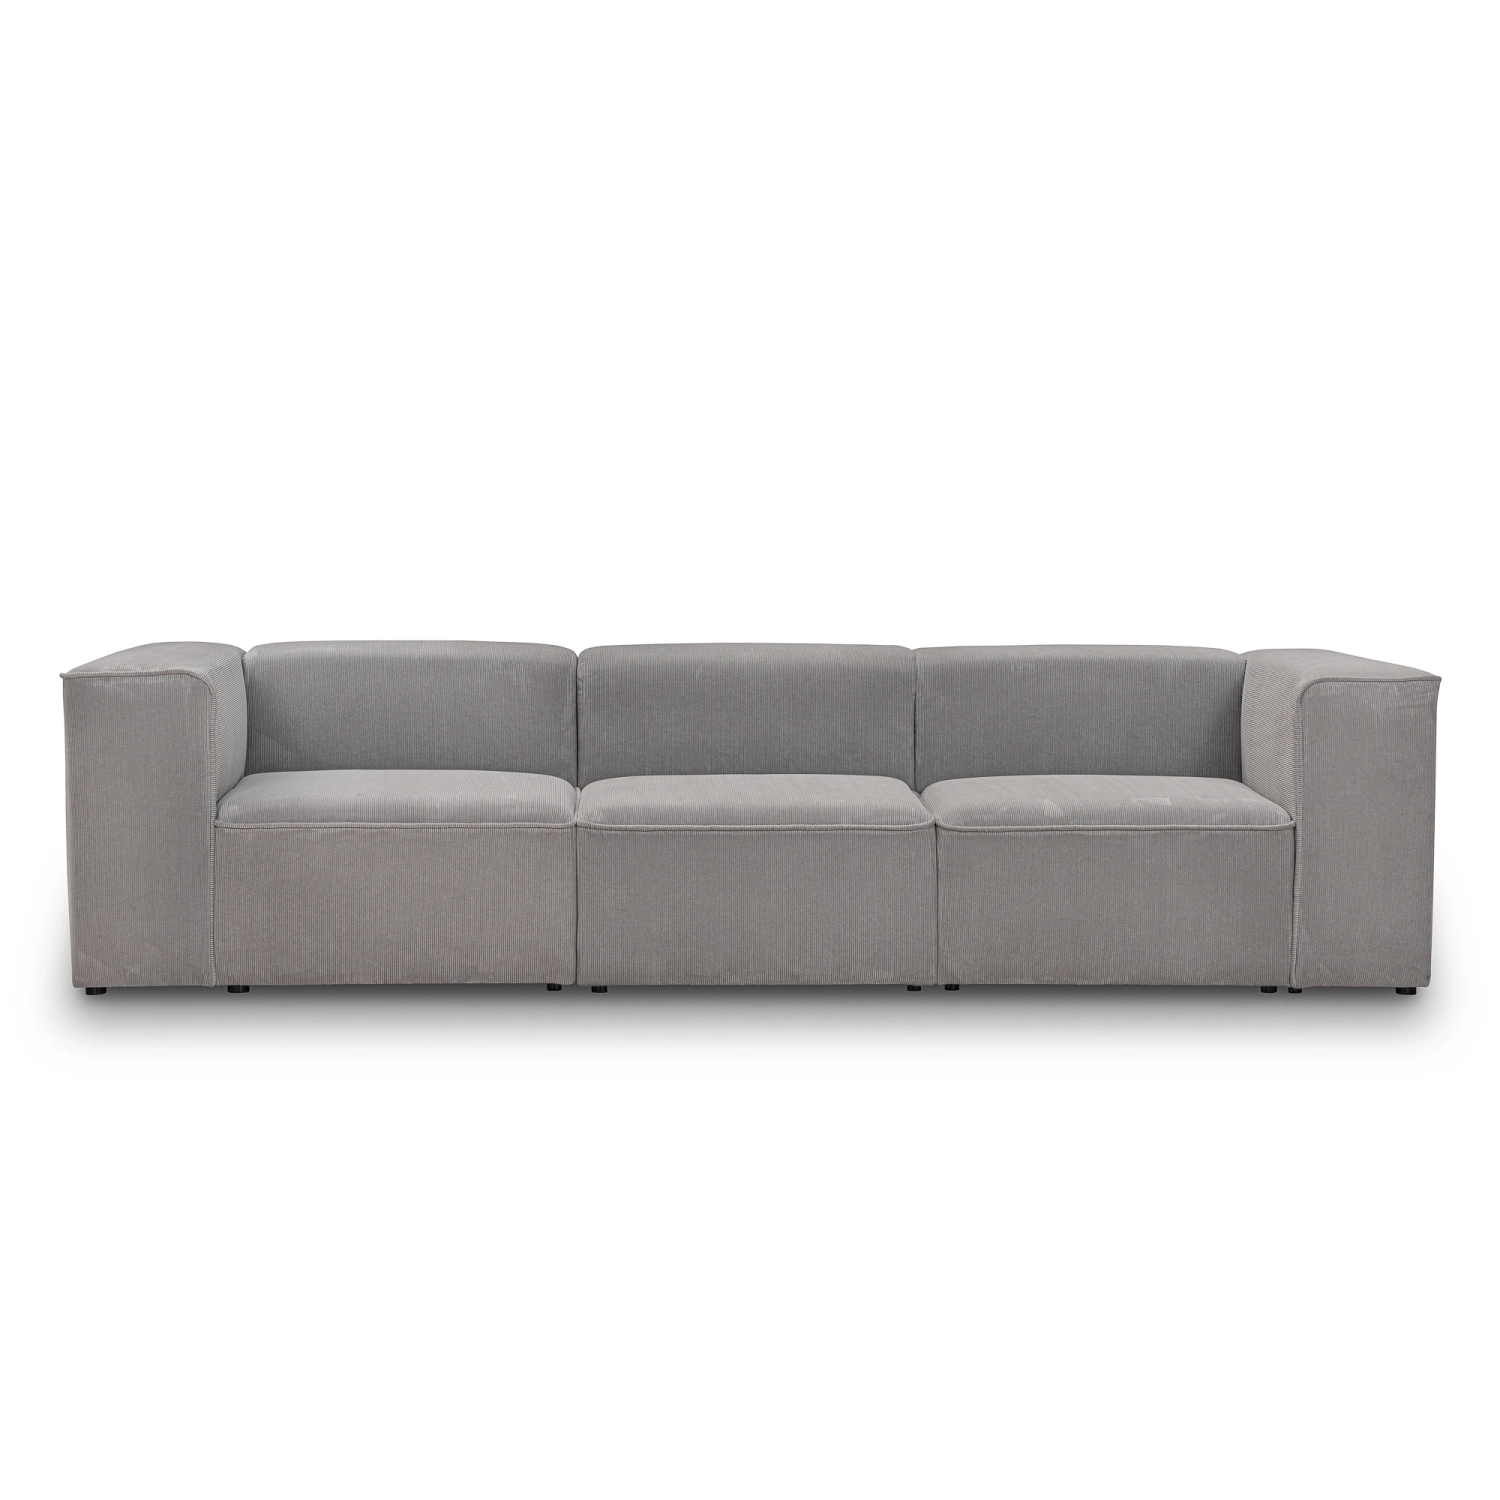 Luss sofa modułowa 3 osobowa 300x100 cm, tkanina sztruks